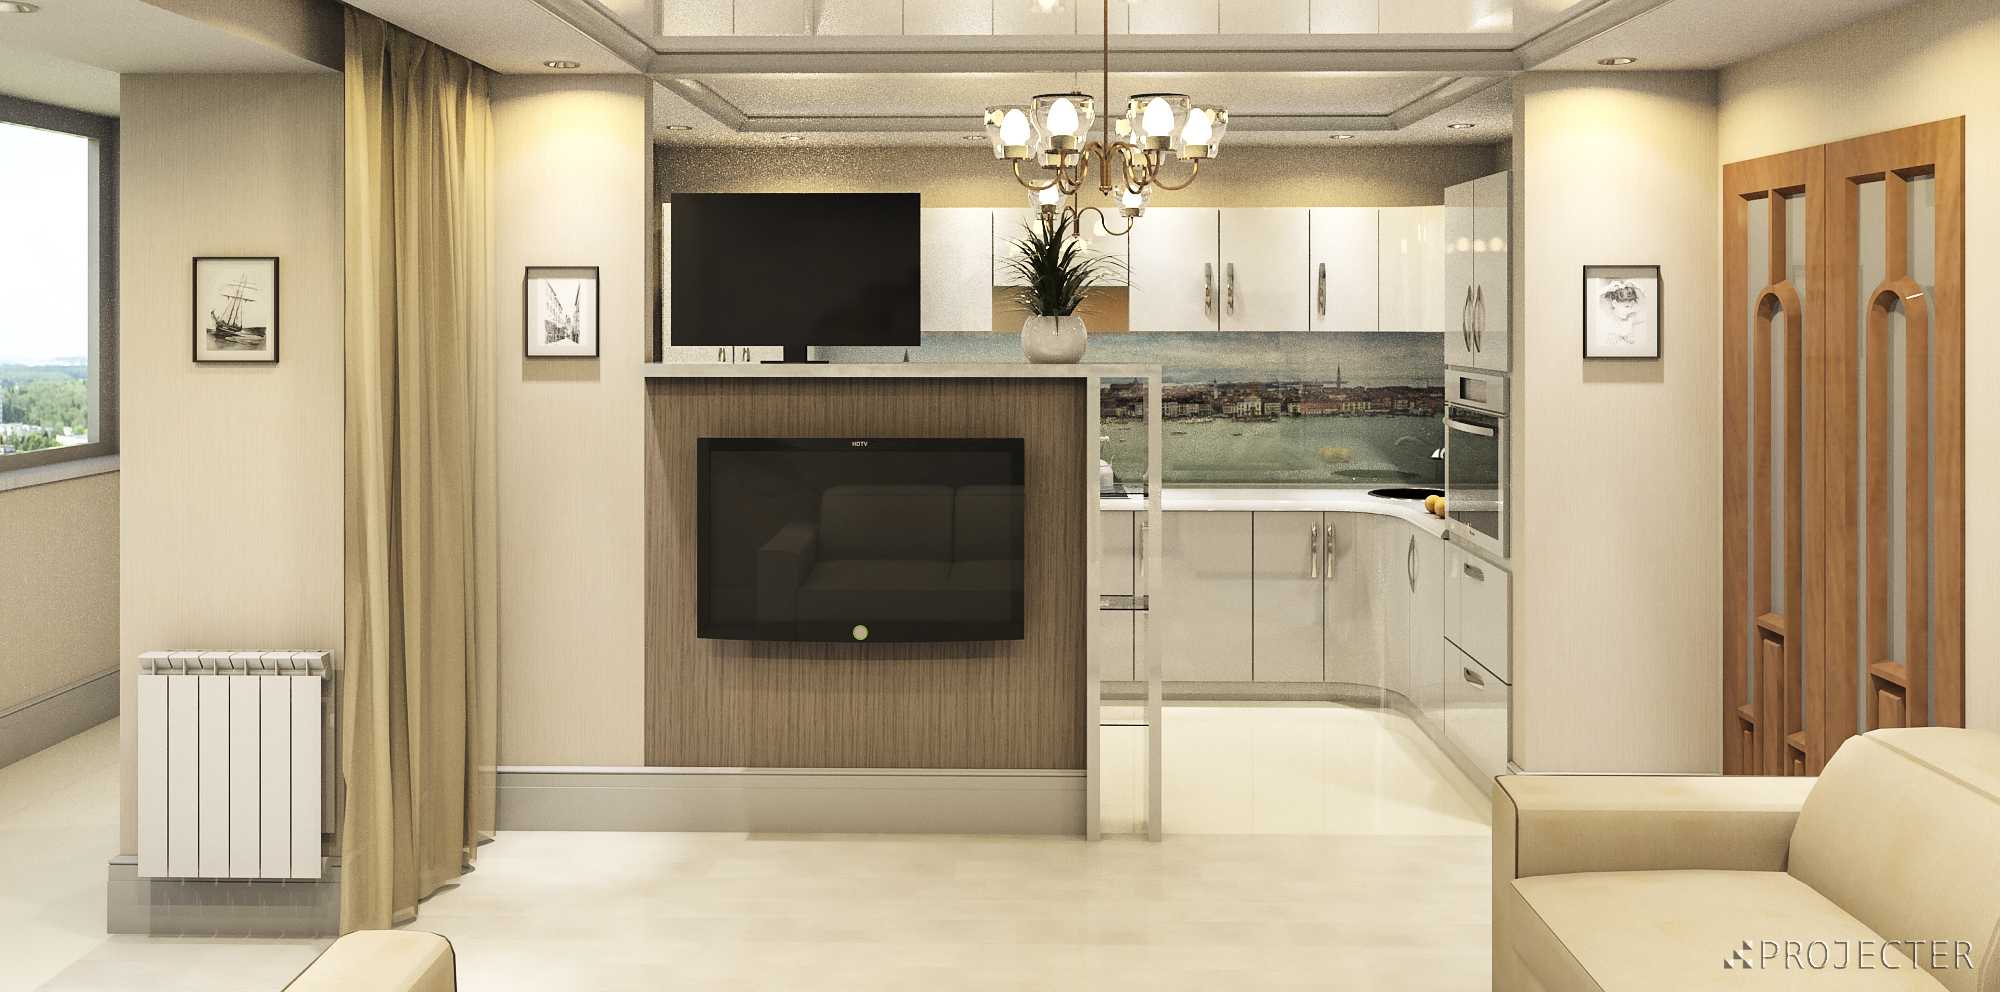 Кухня в коридоре: как правильно перенести и оформить, полезные приёмы для создания комфортного пространства - 25 фото